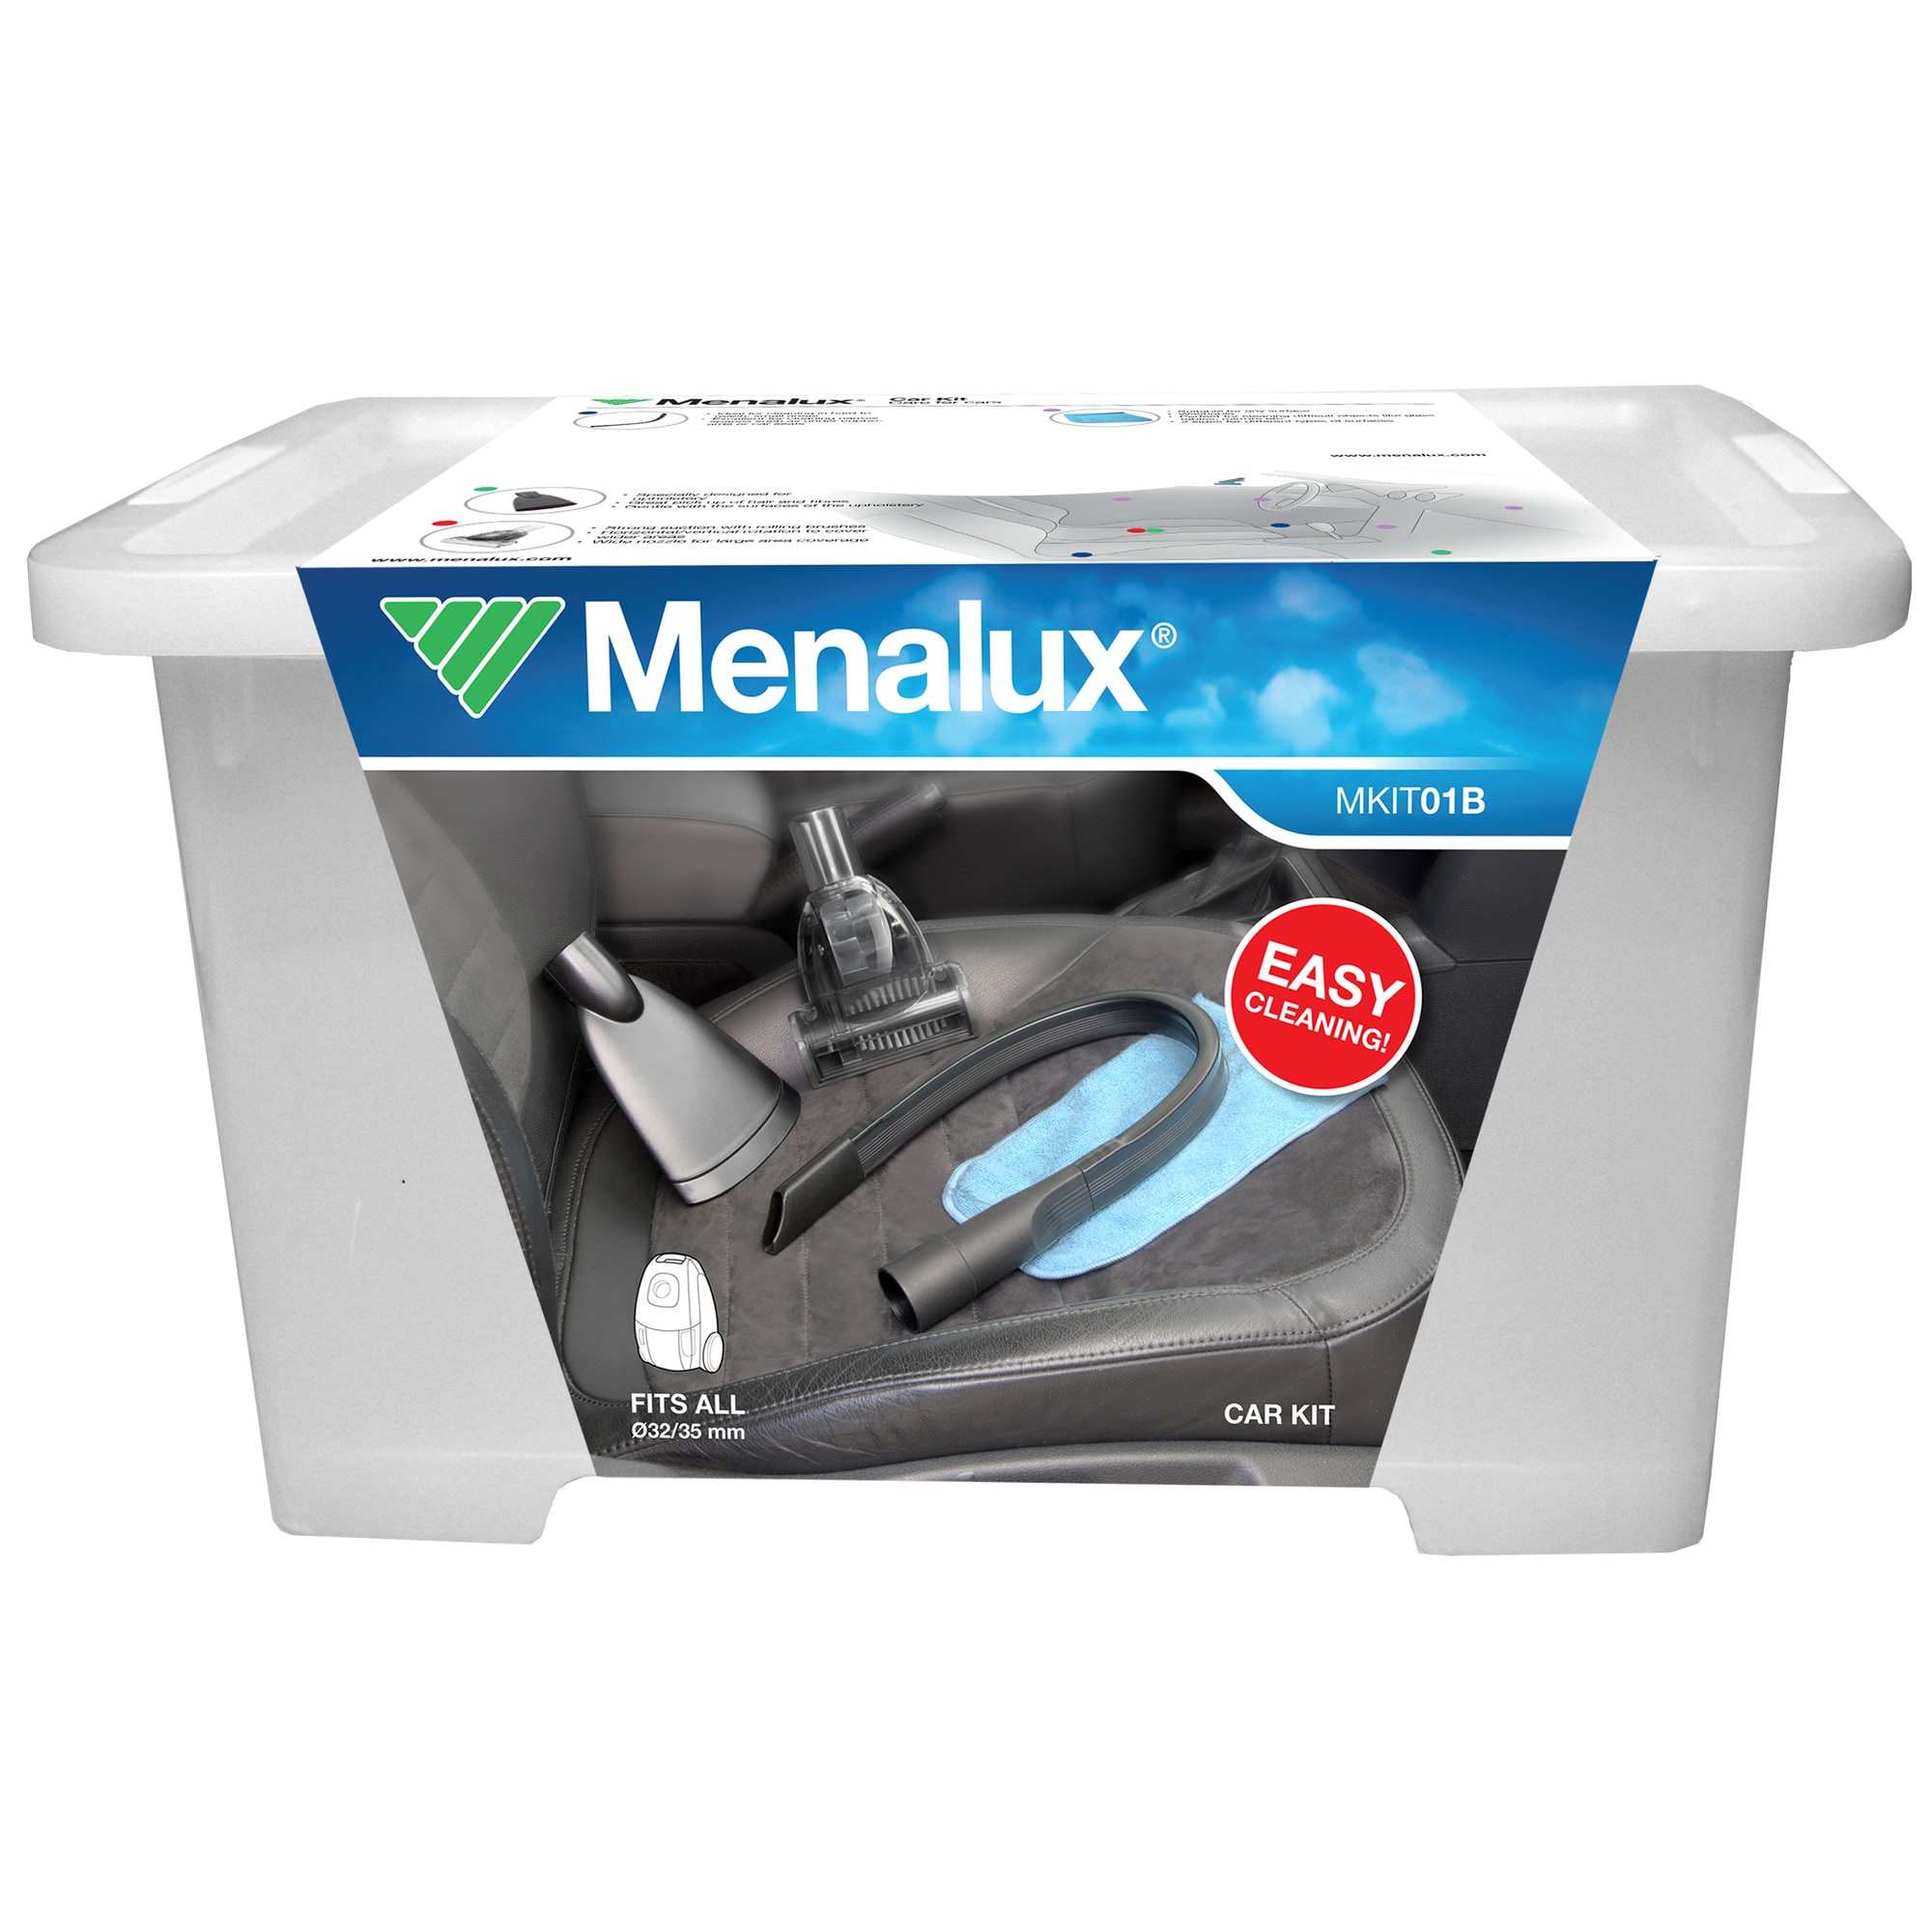 Menalux Auto Care støvsugersæt til bil MKIT01B - Tilbehør støvsuger og  rengøring - Elgiganten